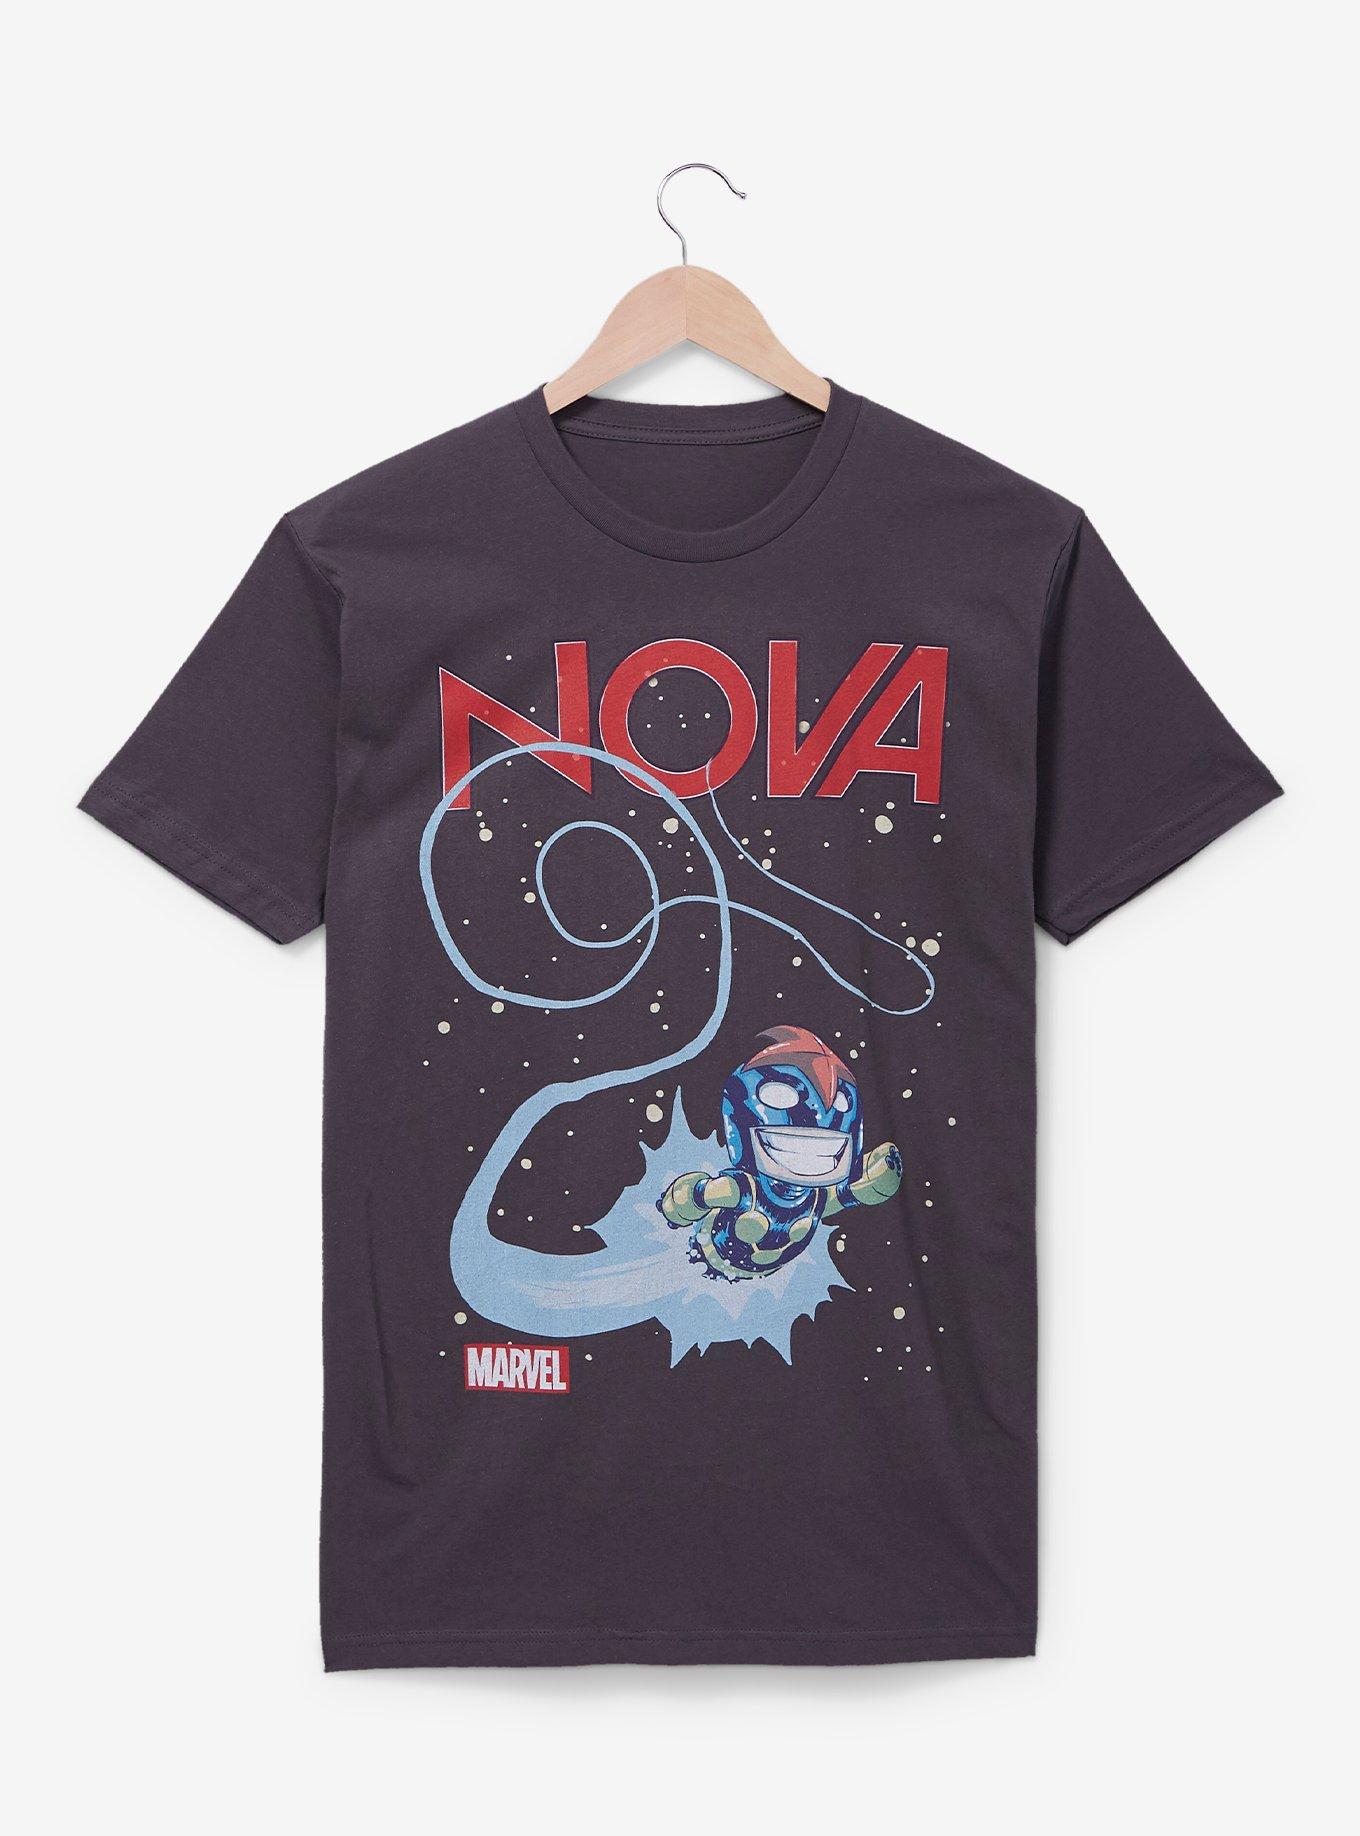 Marvel Nova Comic Book Cover T-Shirt - BoxLunch Exclusive, BLACK, hi-res